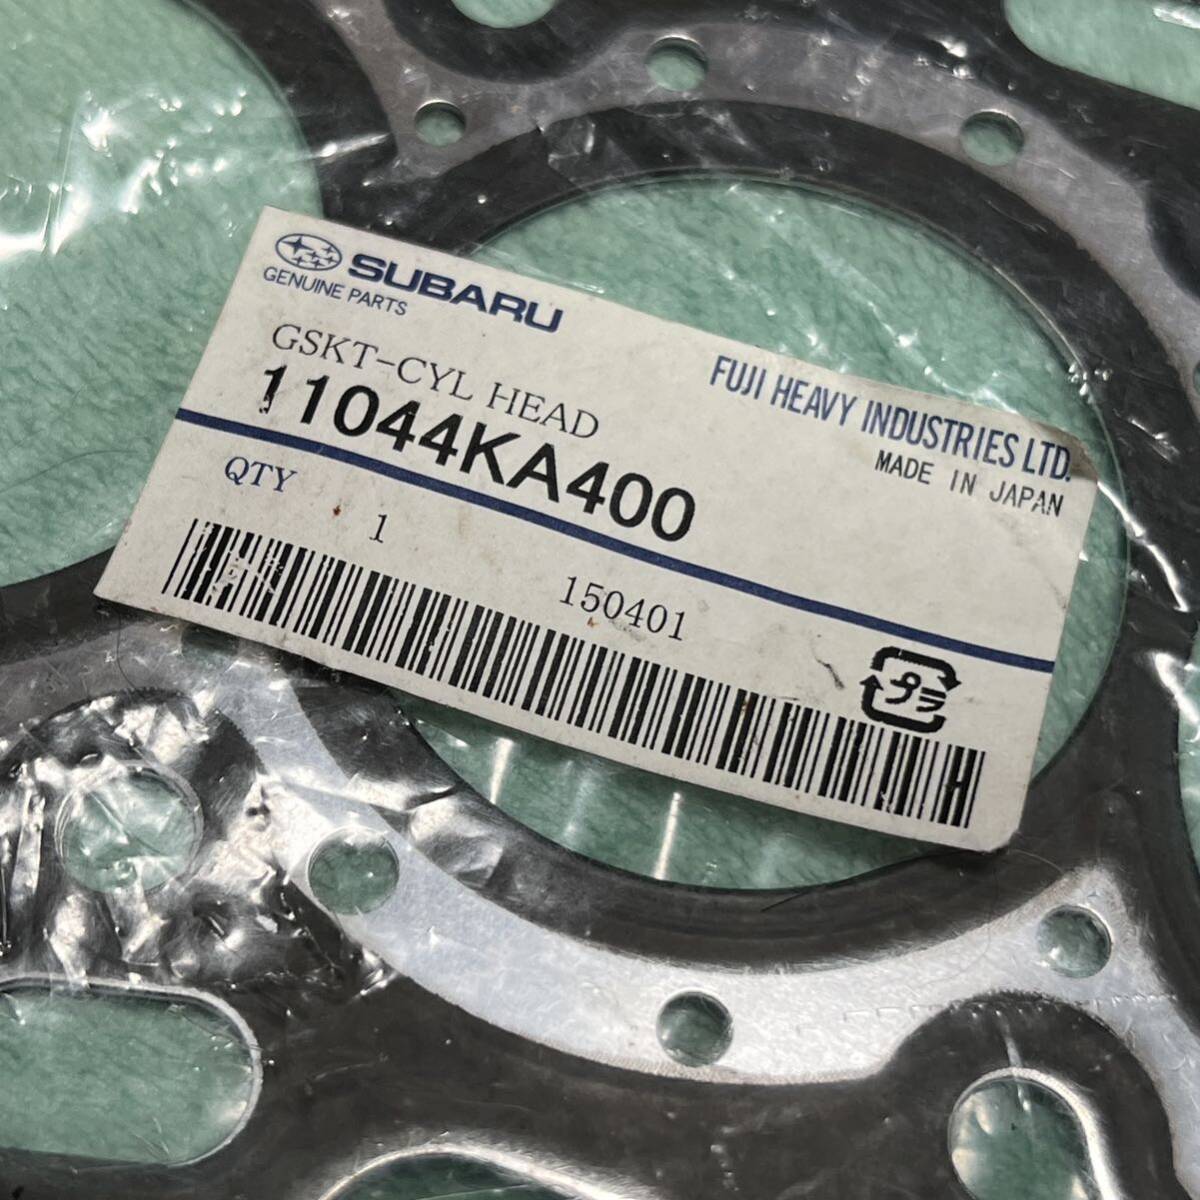  Subaru SUBARU оригинальный metal прокладка номер детали 11044KA400 Pleo Vivio EN07X использование не по назначению и т.п. 